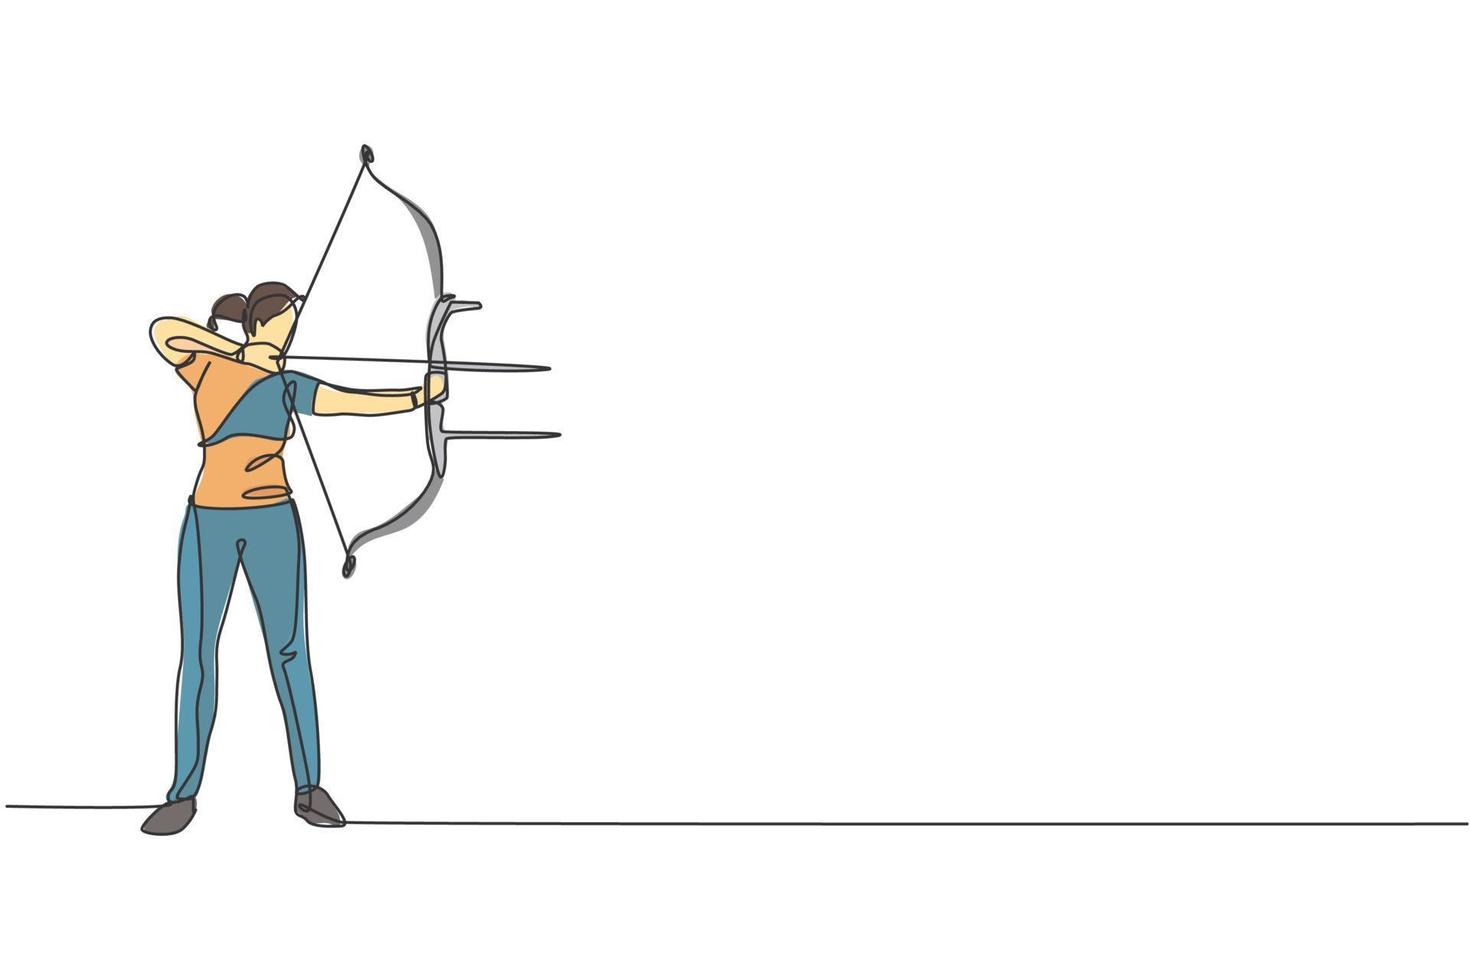 un disegno a linea singola di una giovane donna arciere che esercita il tiro con l'arco per colpire il grafico dell'illustrazione vettoriale del bersaglio. ripresa sana di aggiornamento con il concetto di sport con l'arco. moderno disegno a linea continua